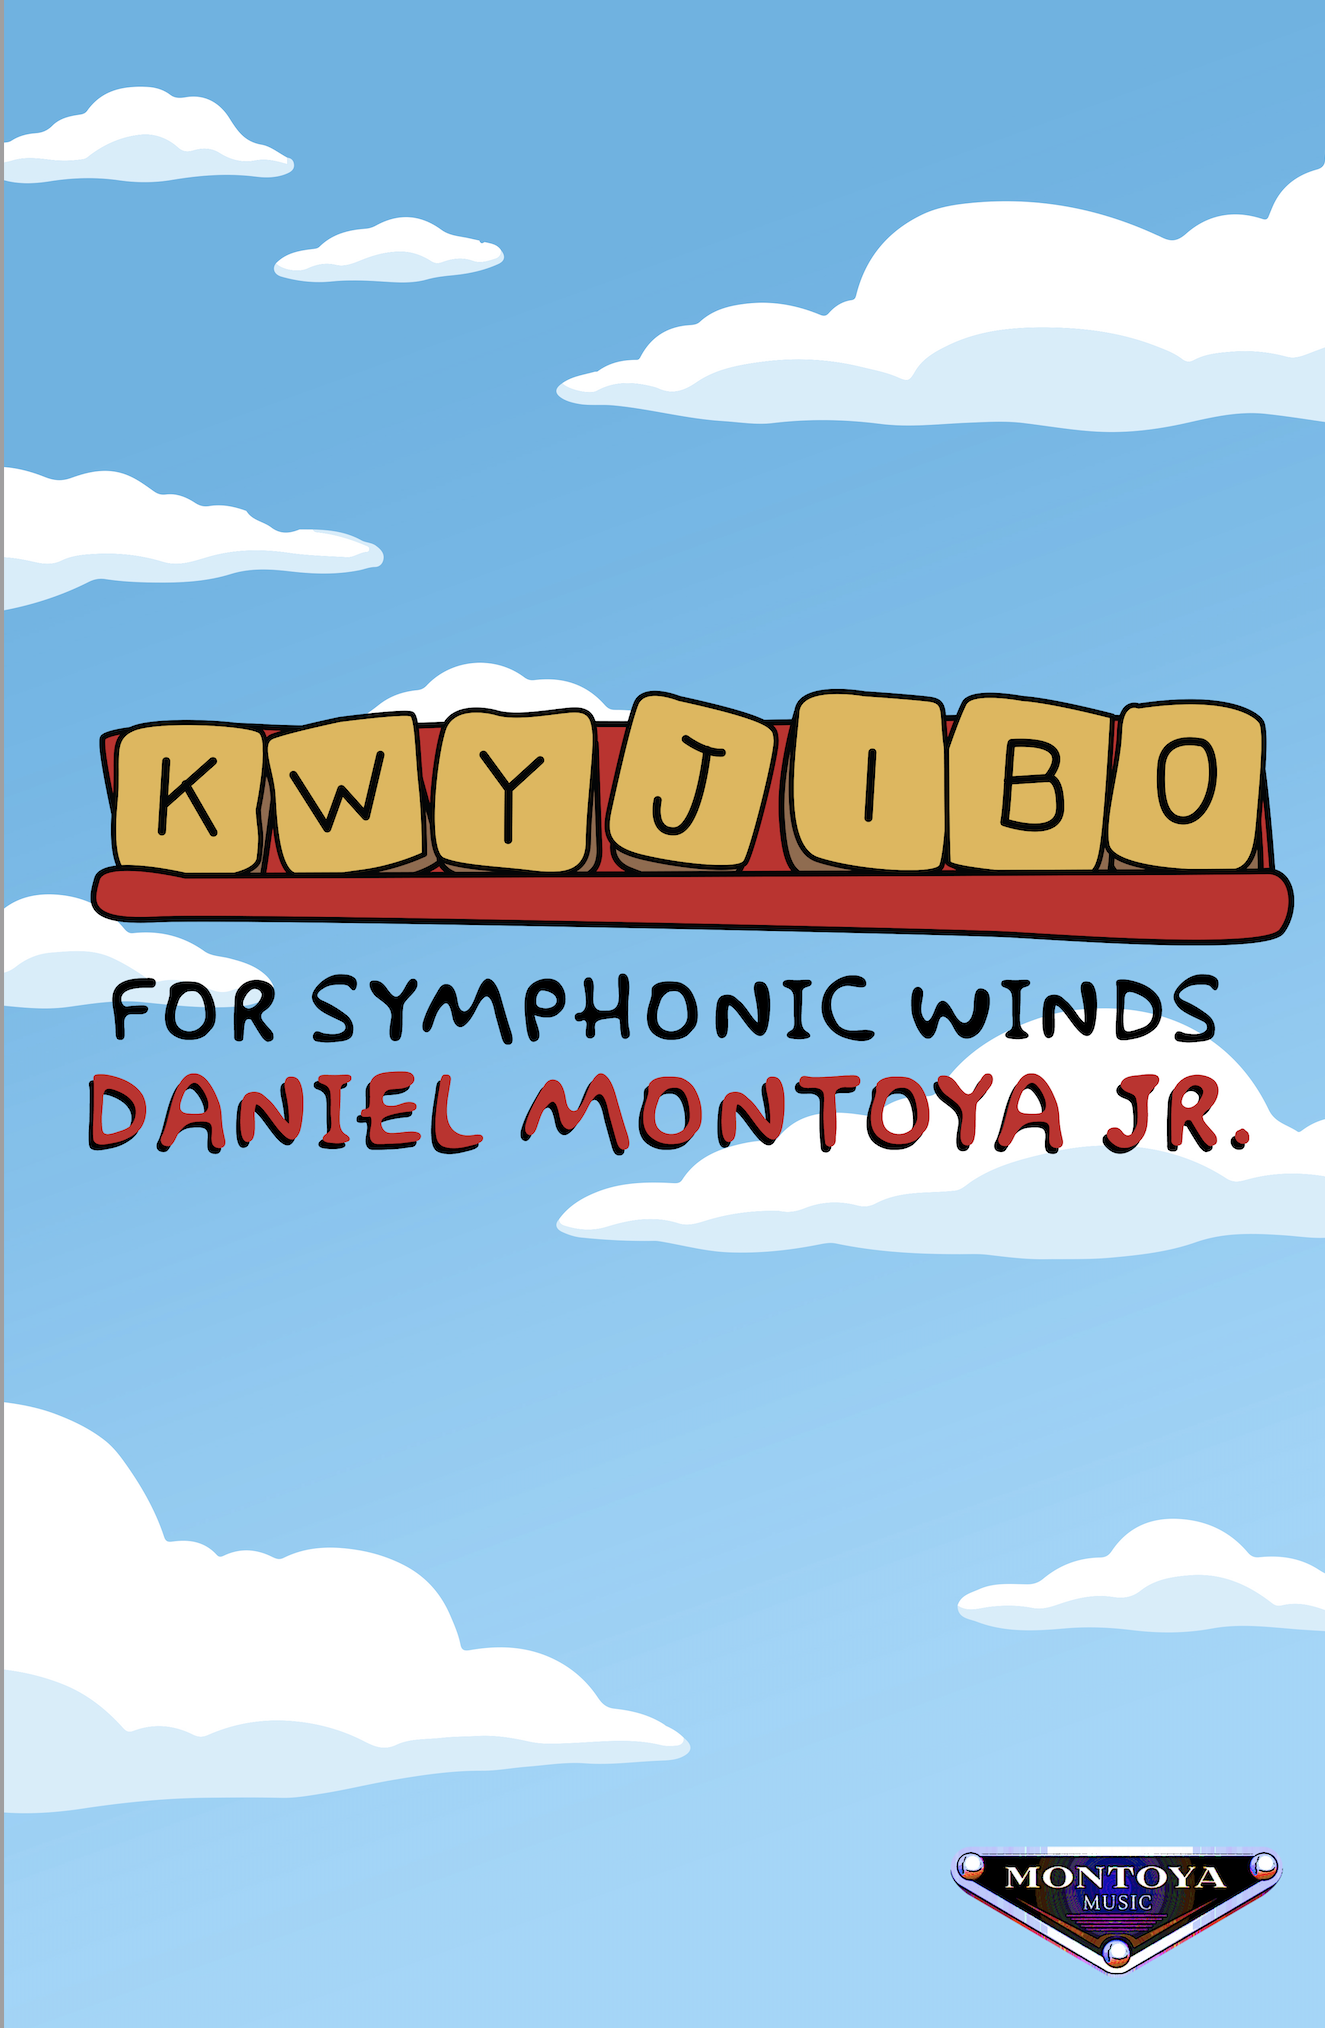 Kwyjibo by Daniel Montoya Jr.